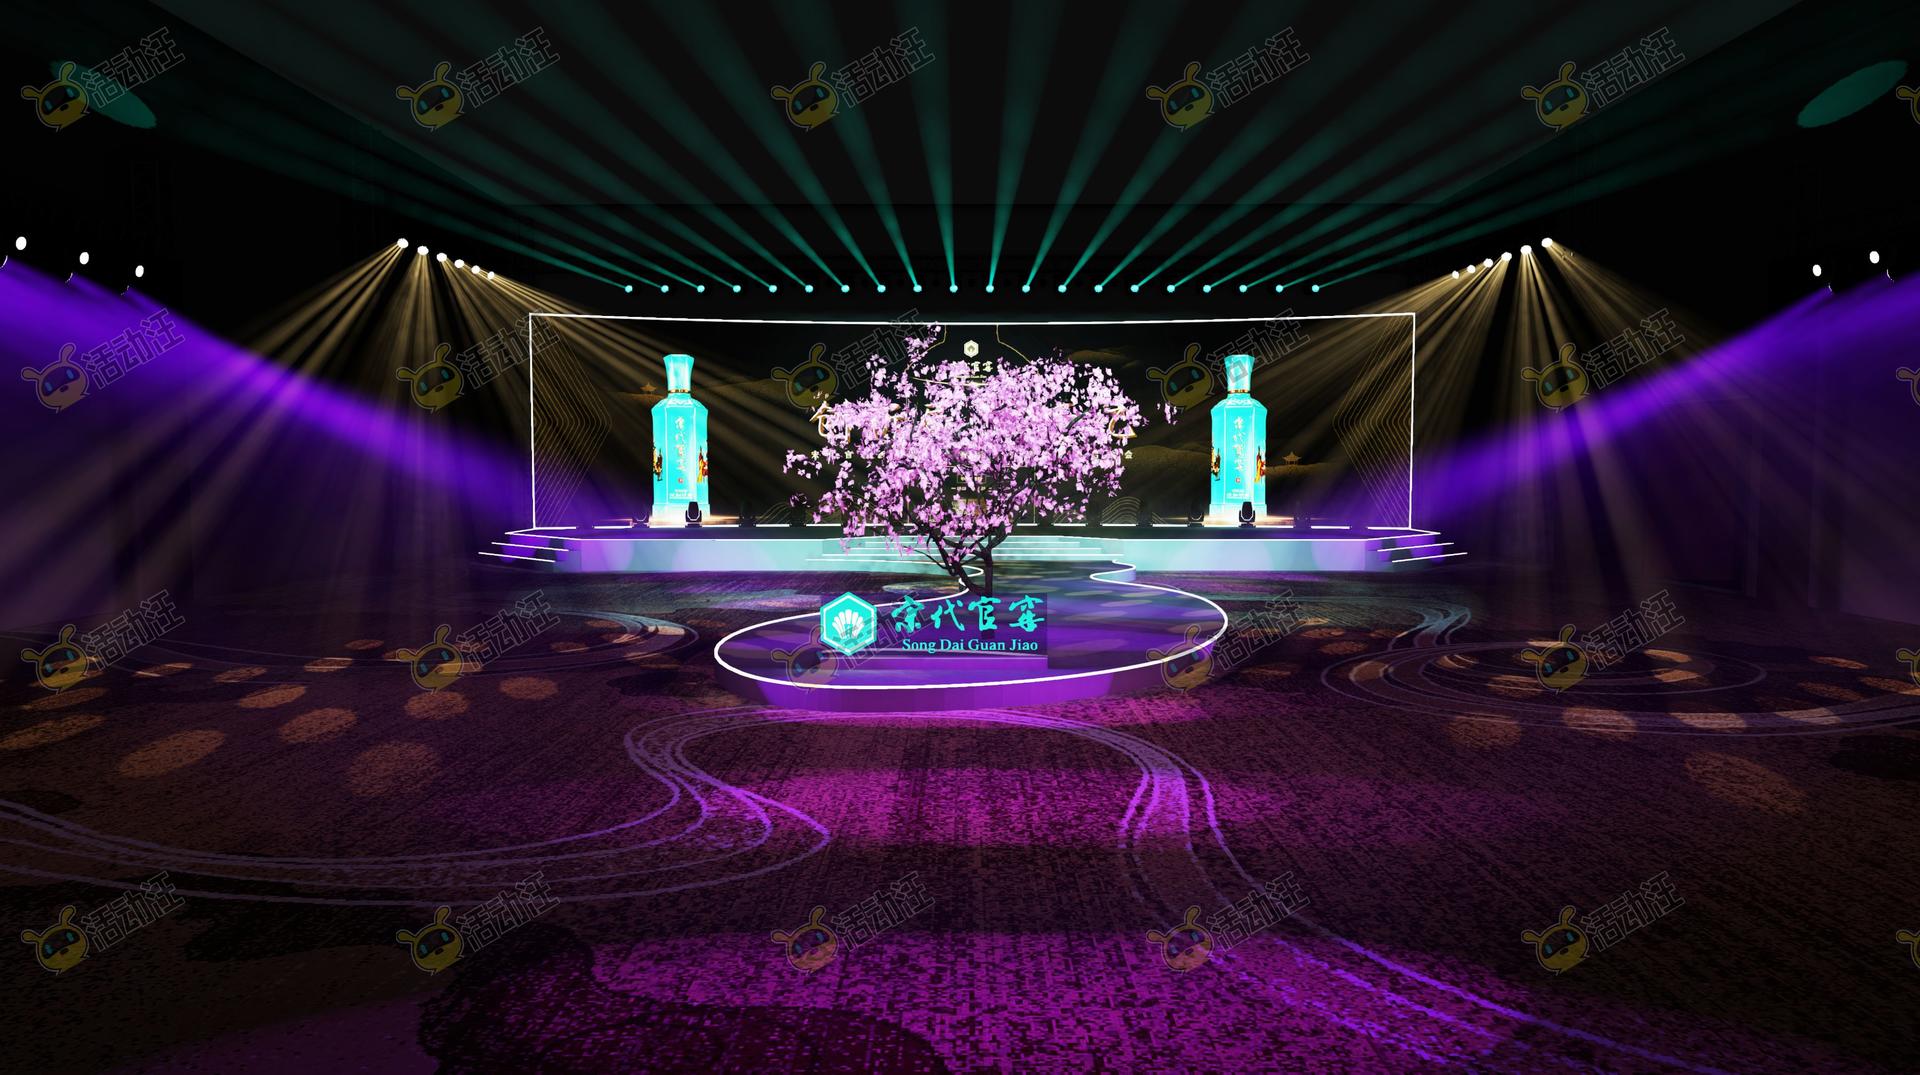 新品发布会主视角活动舞台舞美3d效果图